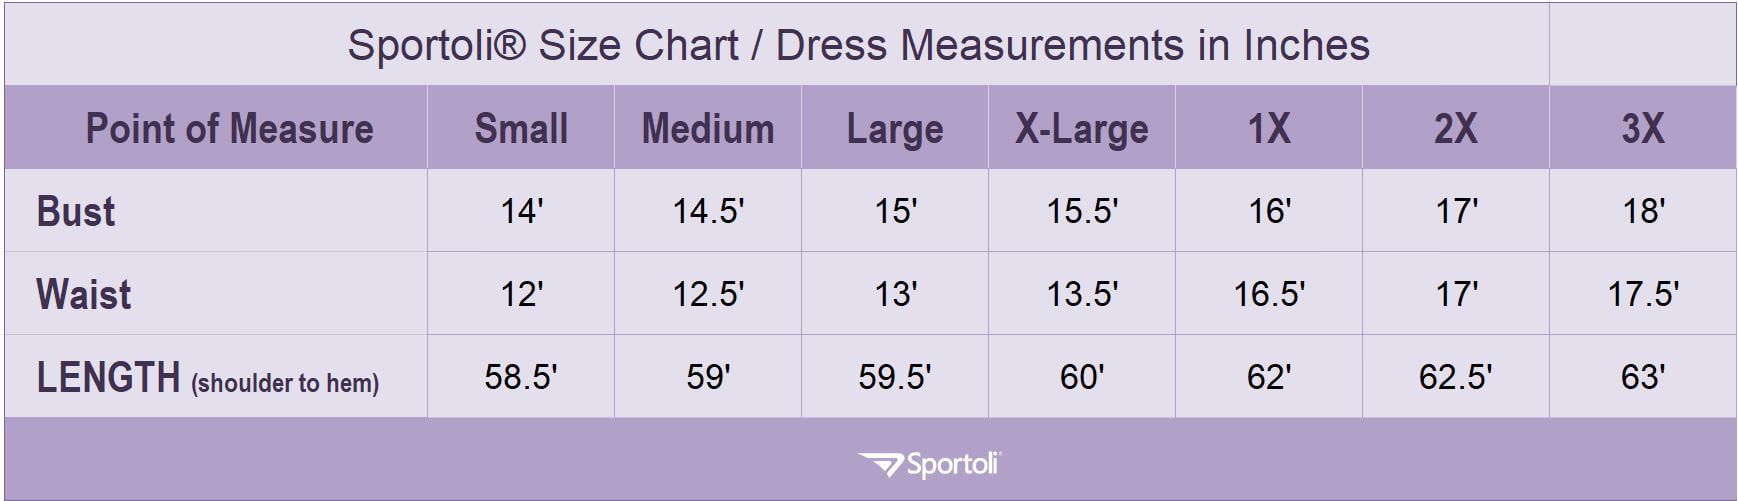 Sportoli Size Chart